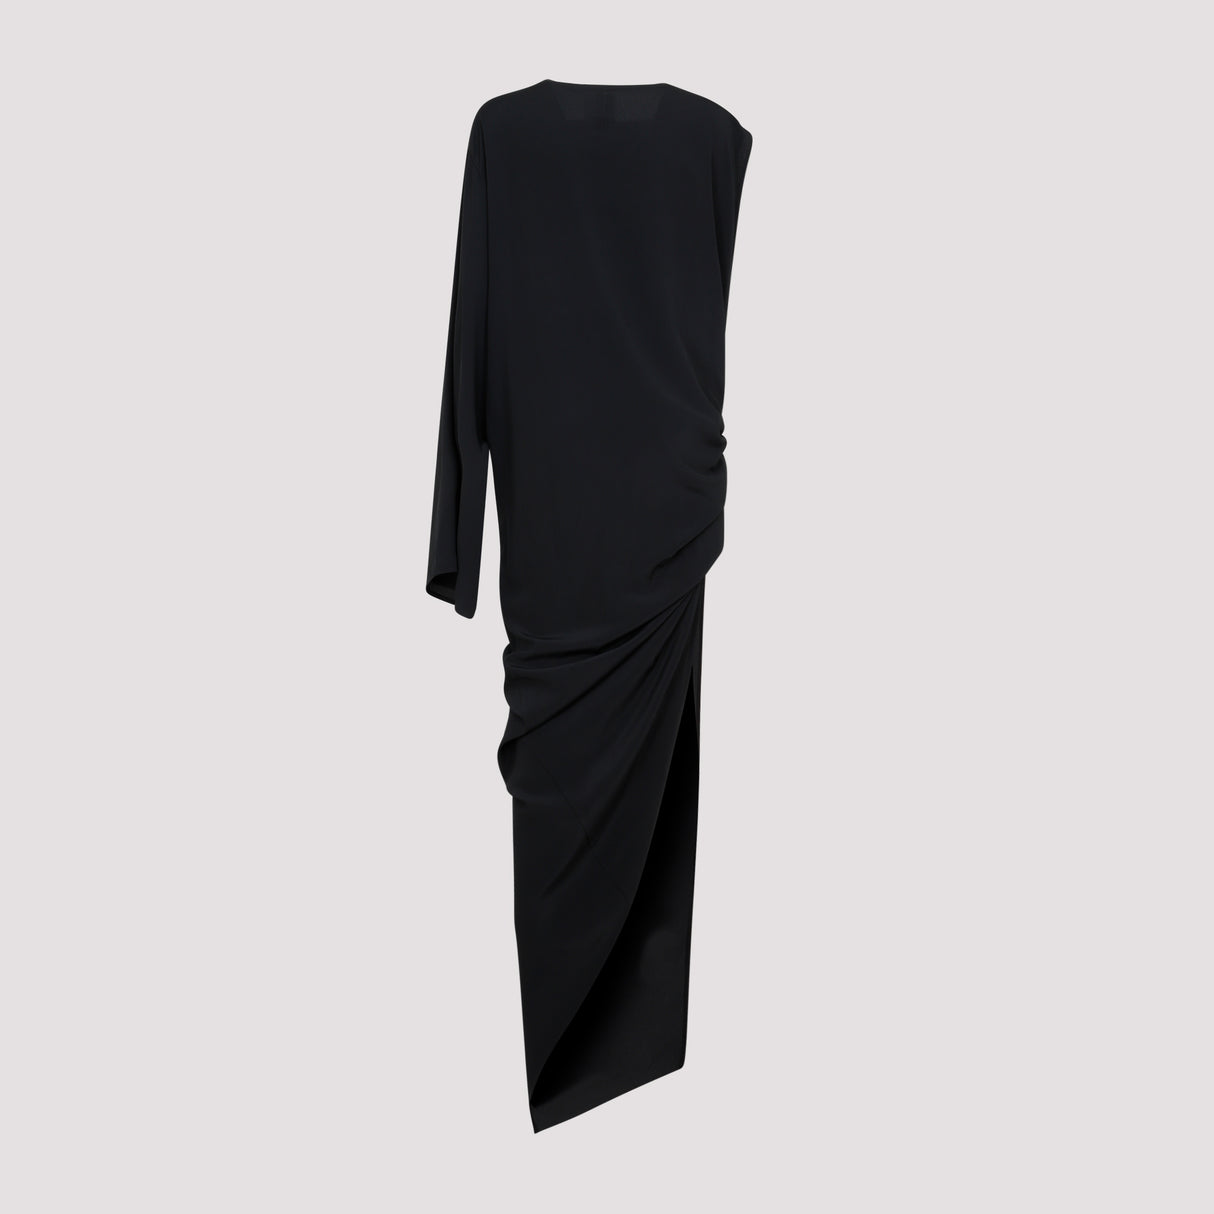 RICK OWENS Sleek Black Dress for Women with Luxurious Fabric Blend